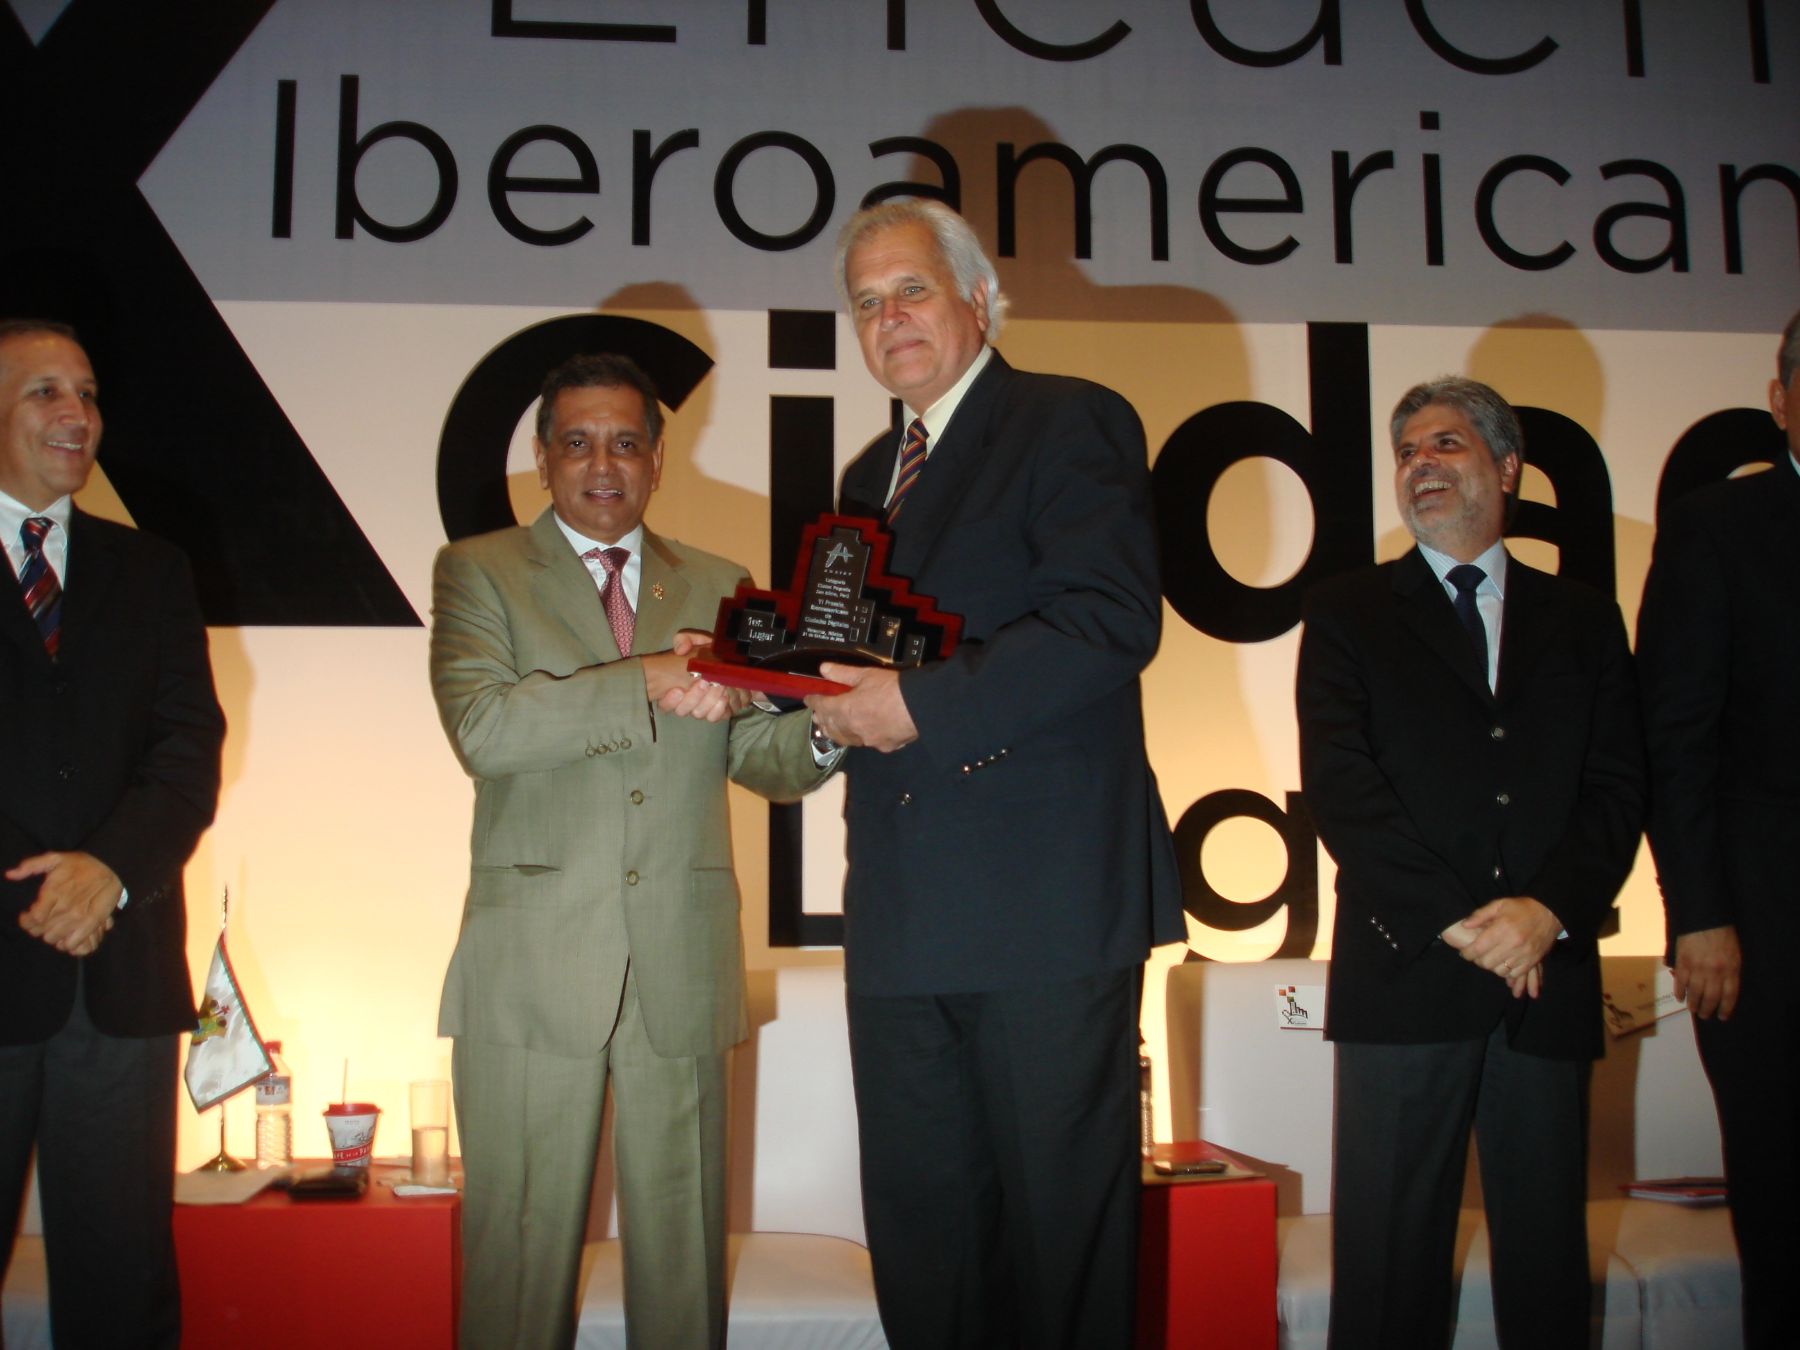 Alcalde de San Isidro, Antonio Meier recibe premio para el distrito en México. Foto: Mun. San Isidro